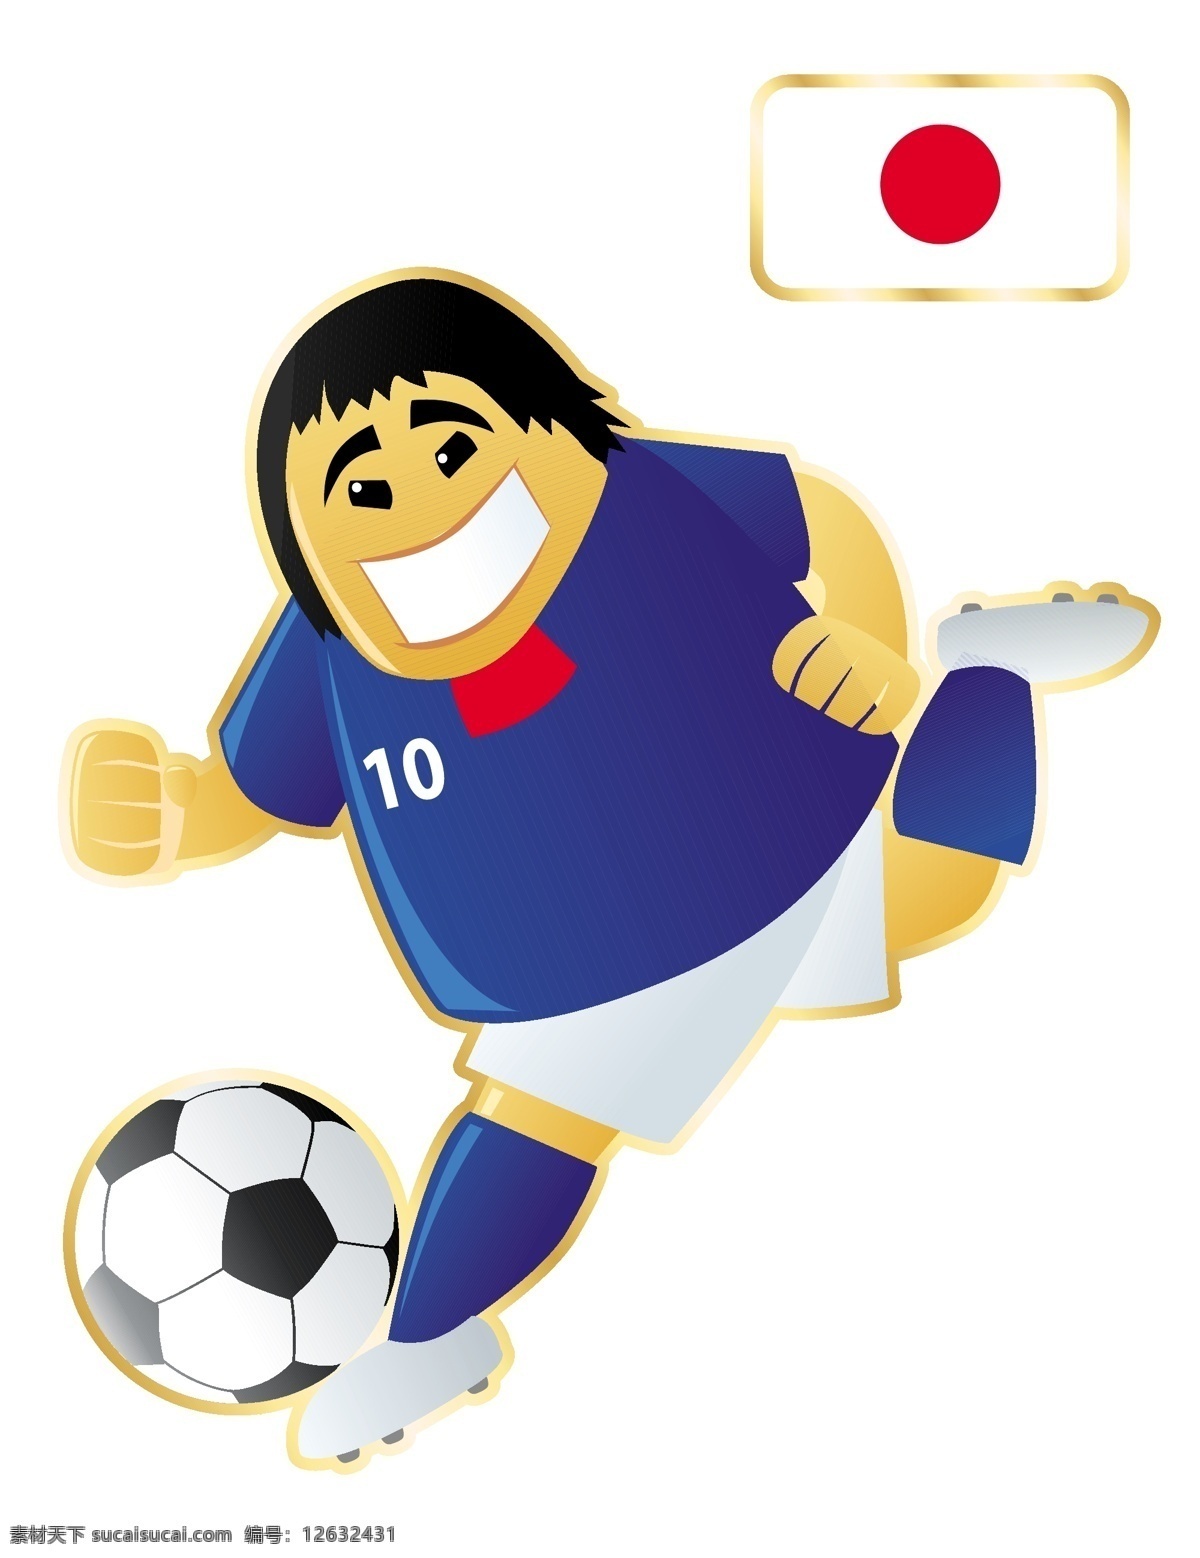 日本 足球 卡通 人物 形象 矢量图 运动员 大胖子 运动 踢球 外国 矢量 扁平化 平面